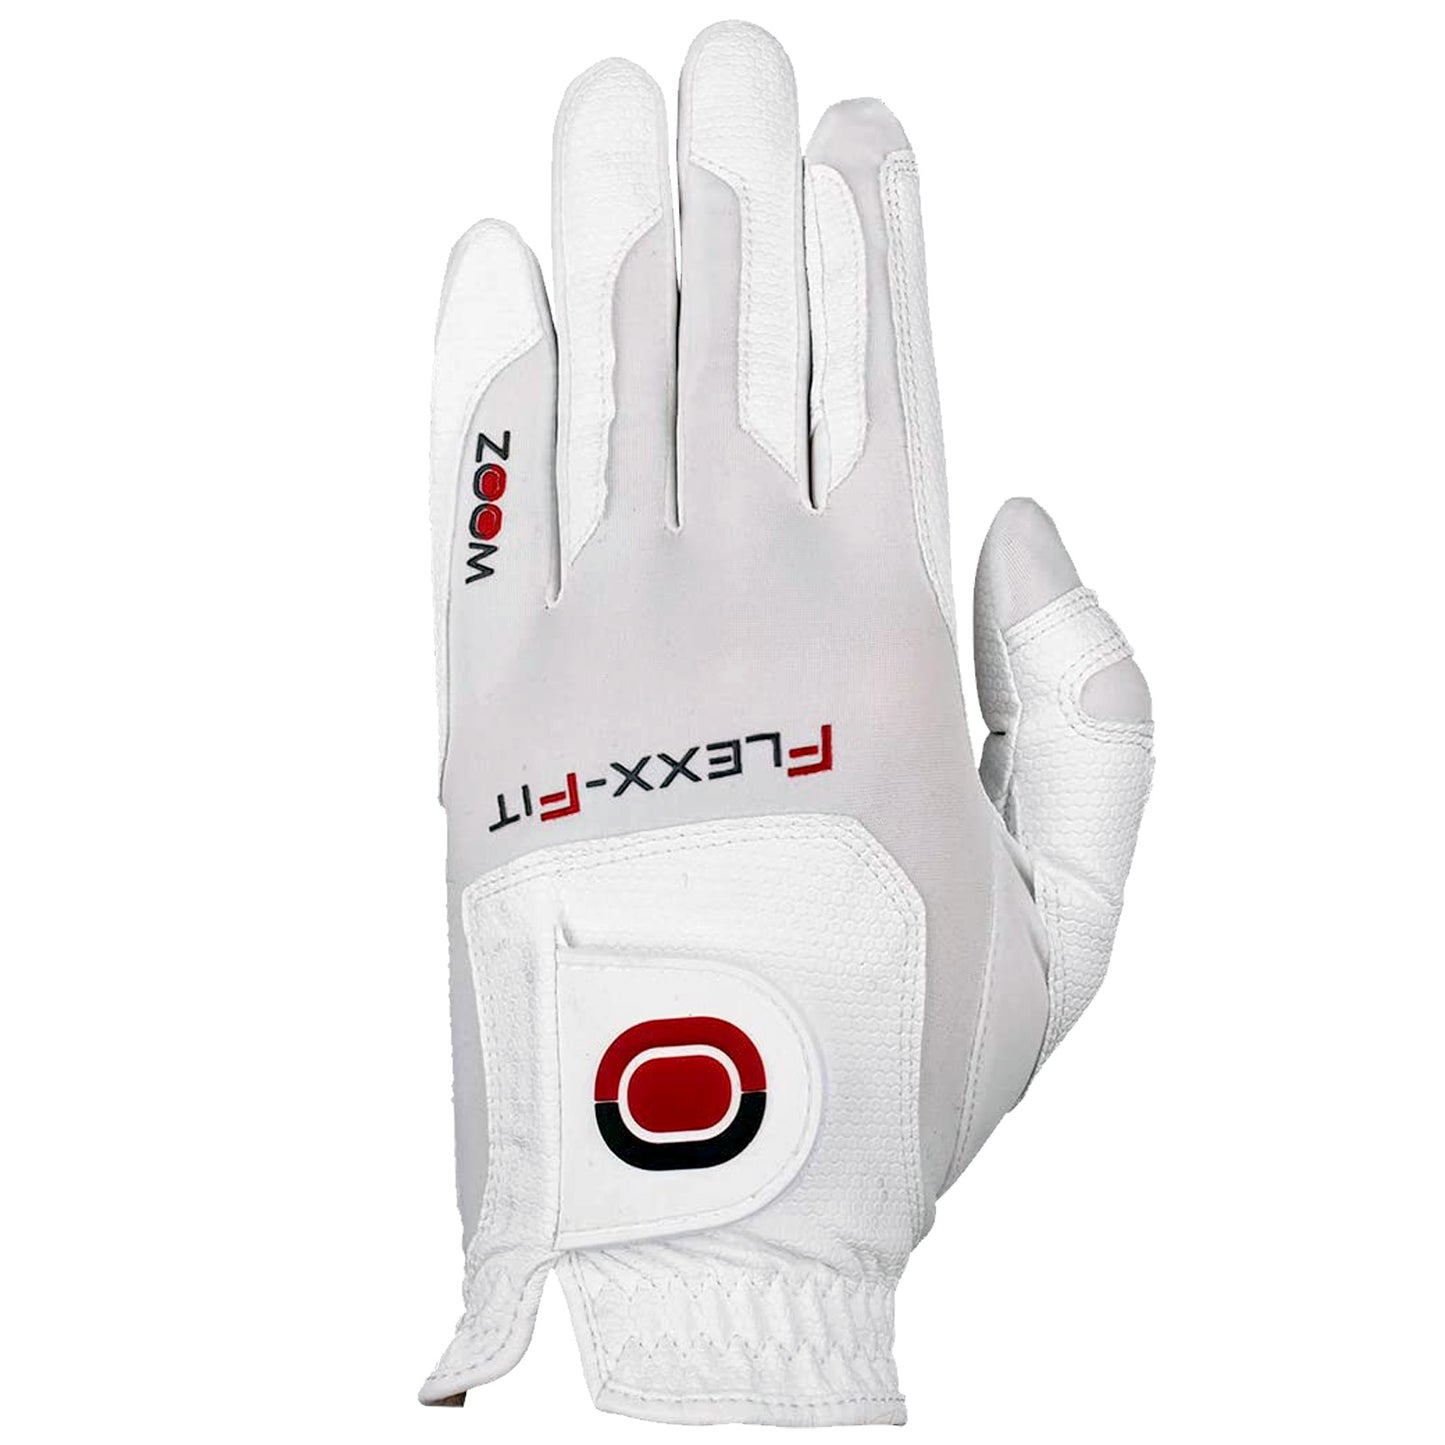 Zoom Mens Left Hand Flexx Fit TOUR Golf Glove - One Size